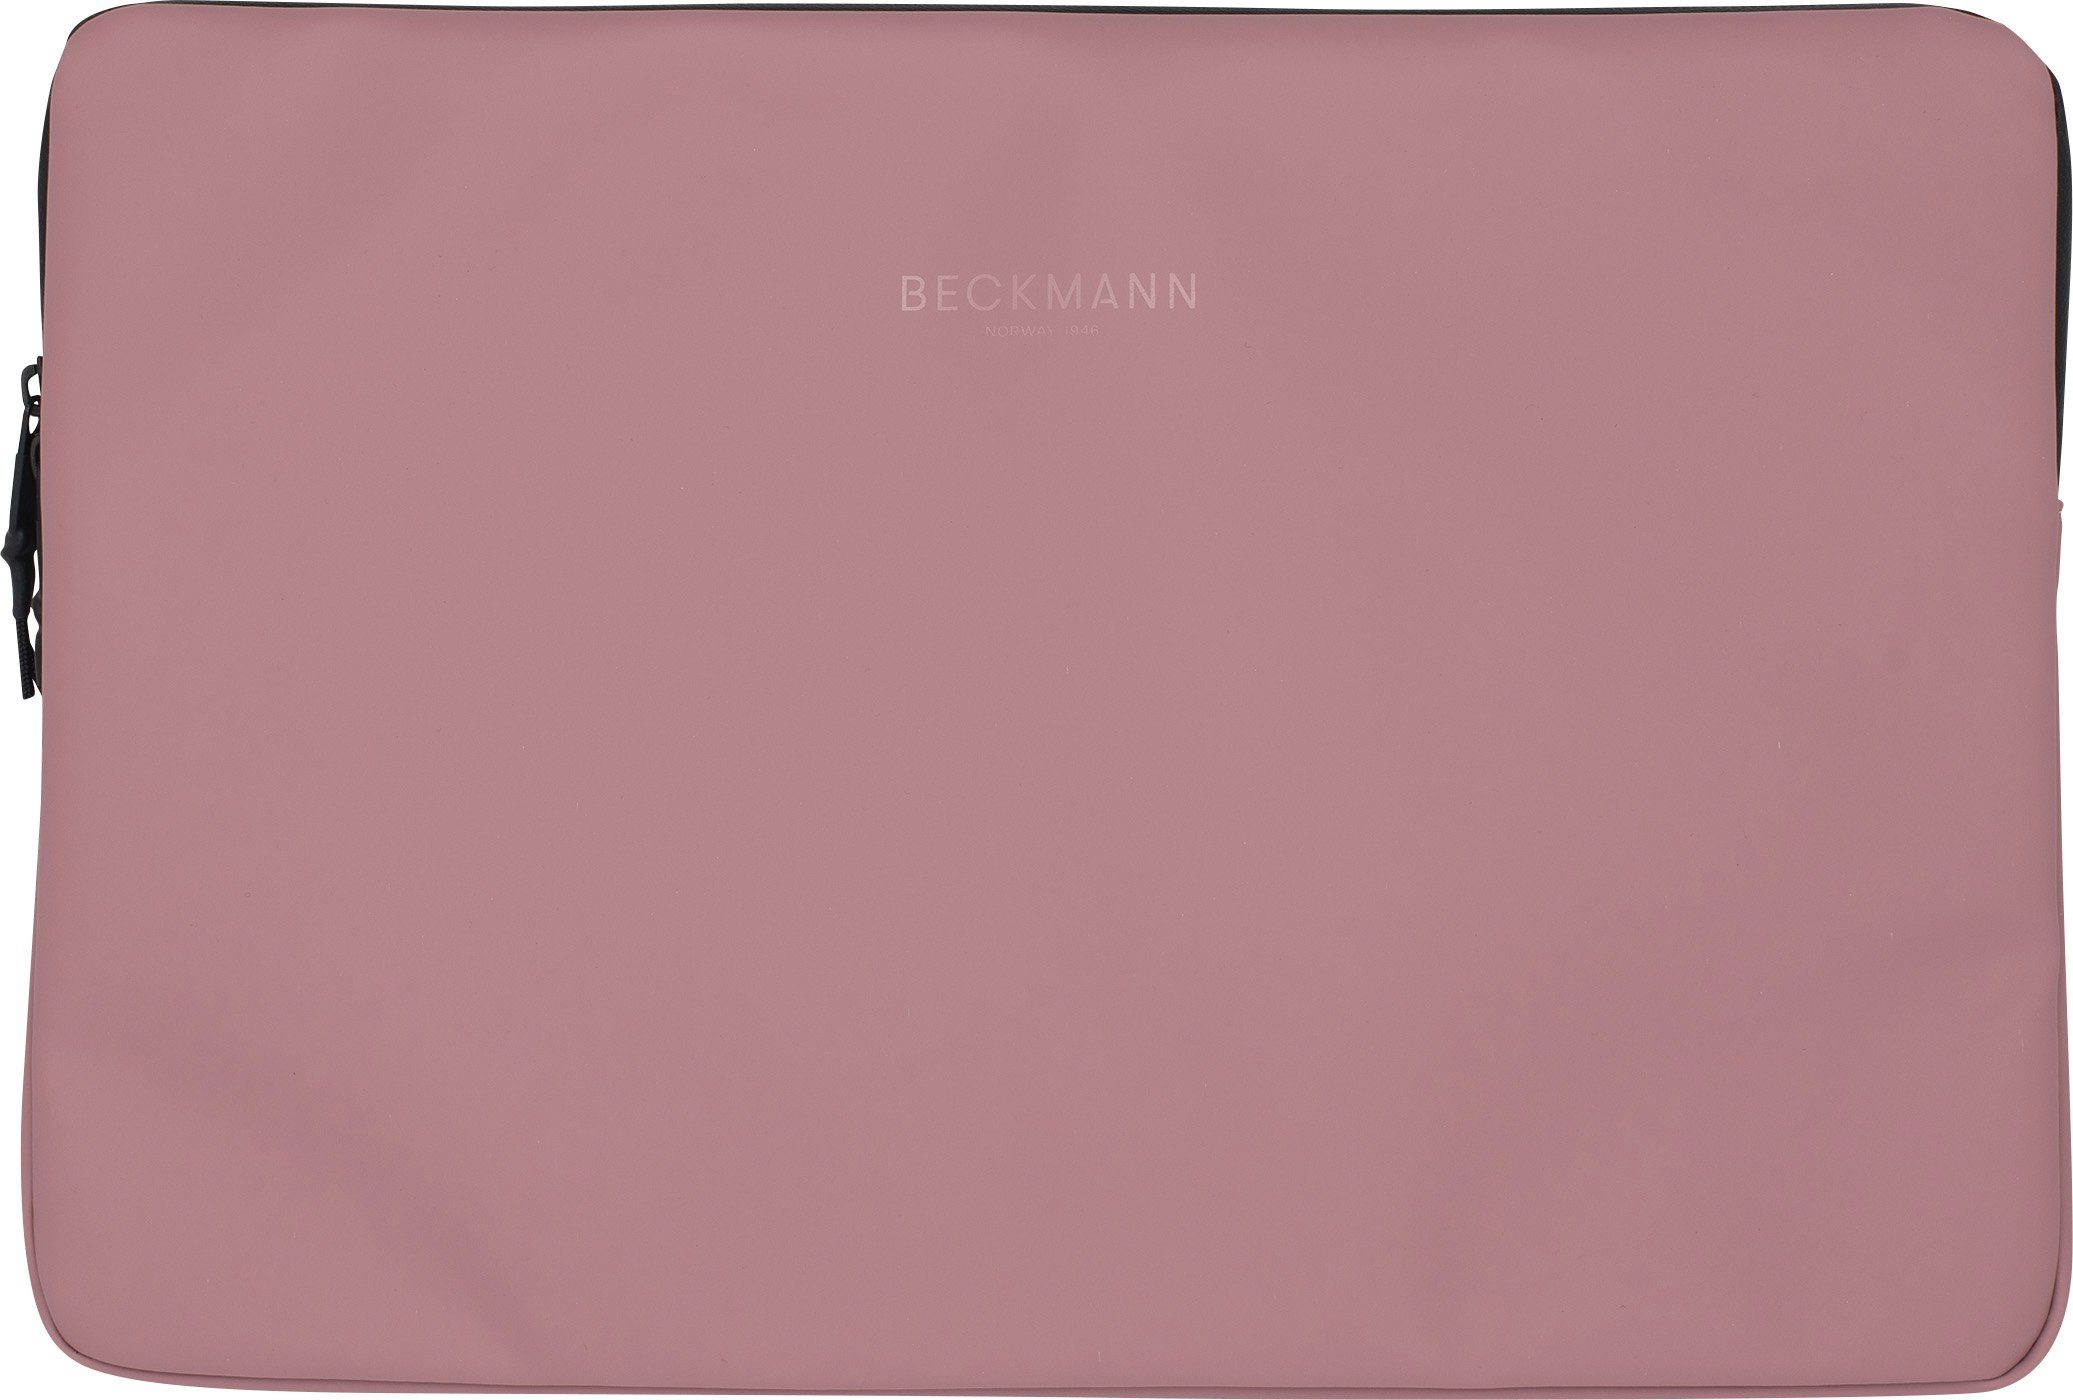 L Laptoptasche (1 Stück), Beckmann Laptophülle Rose 15 Zoll Sleeve Street Laptoptasche, Tablet-Hülle Ash